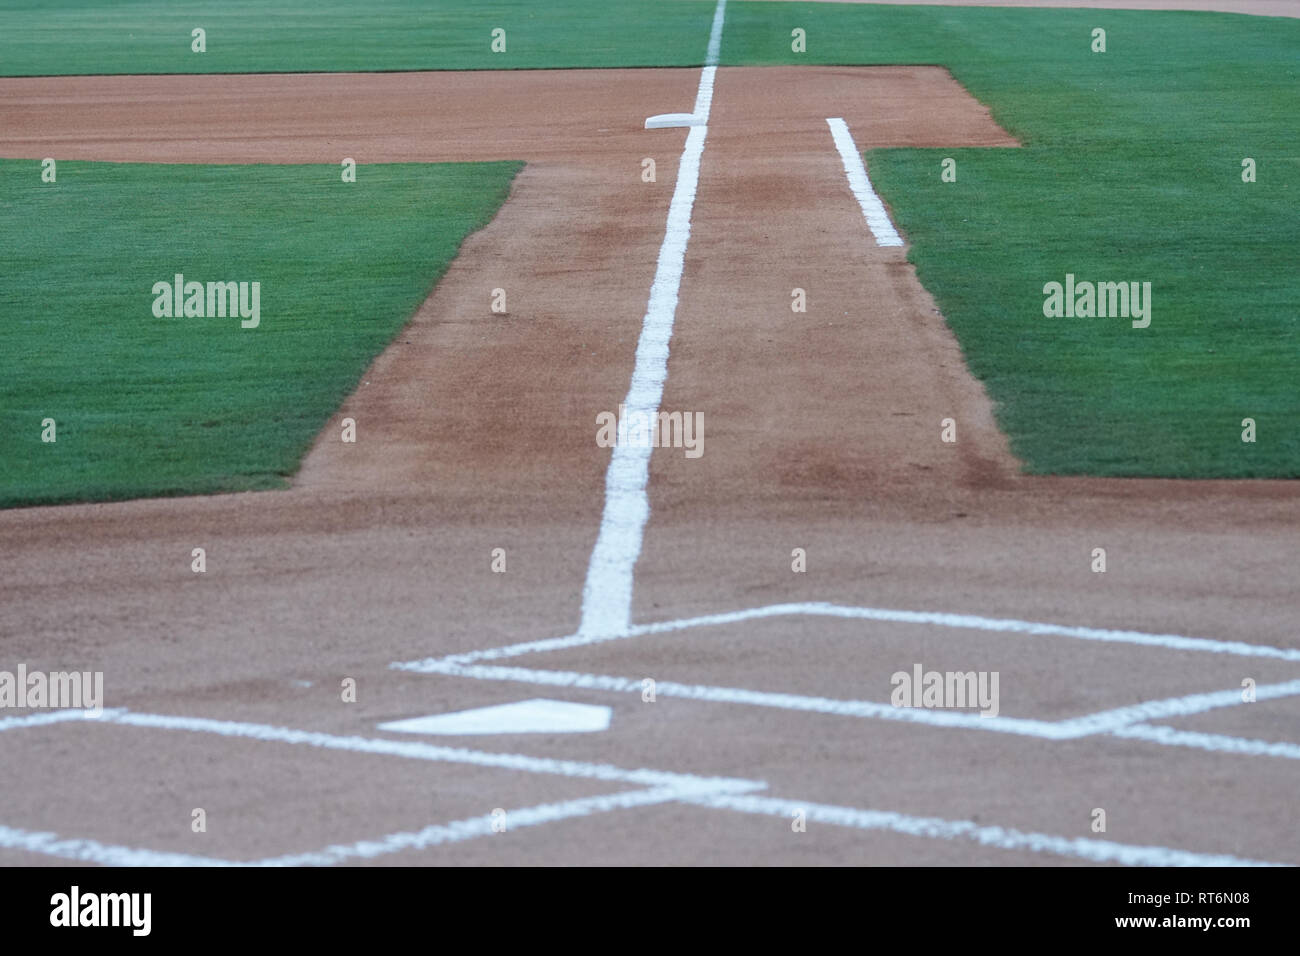 Una vista dalla piastra iniziale verso il basso della prima linea di base su un campo da baseball Foto Stock